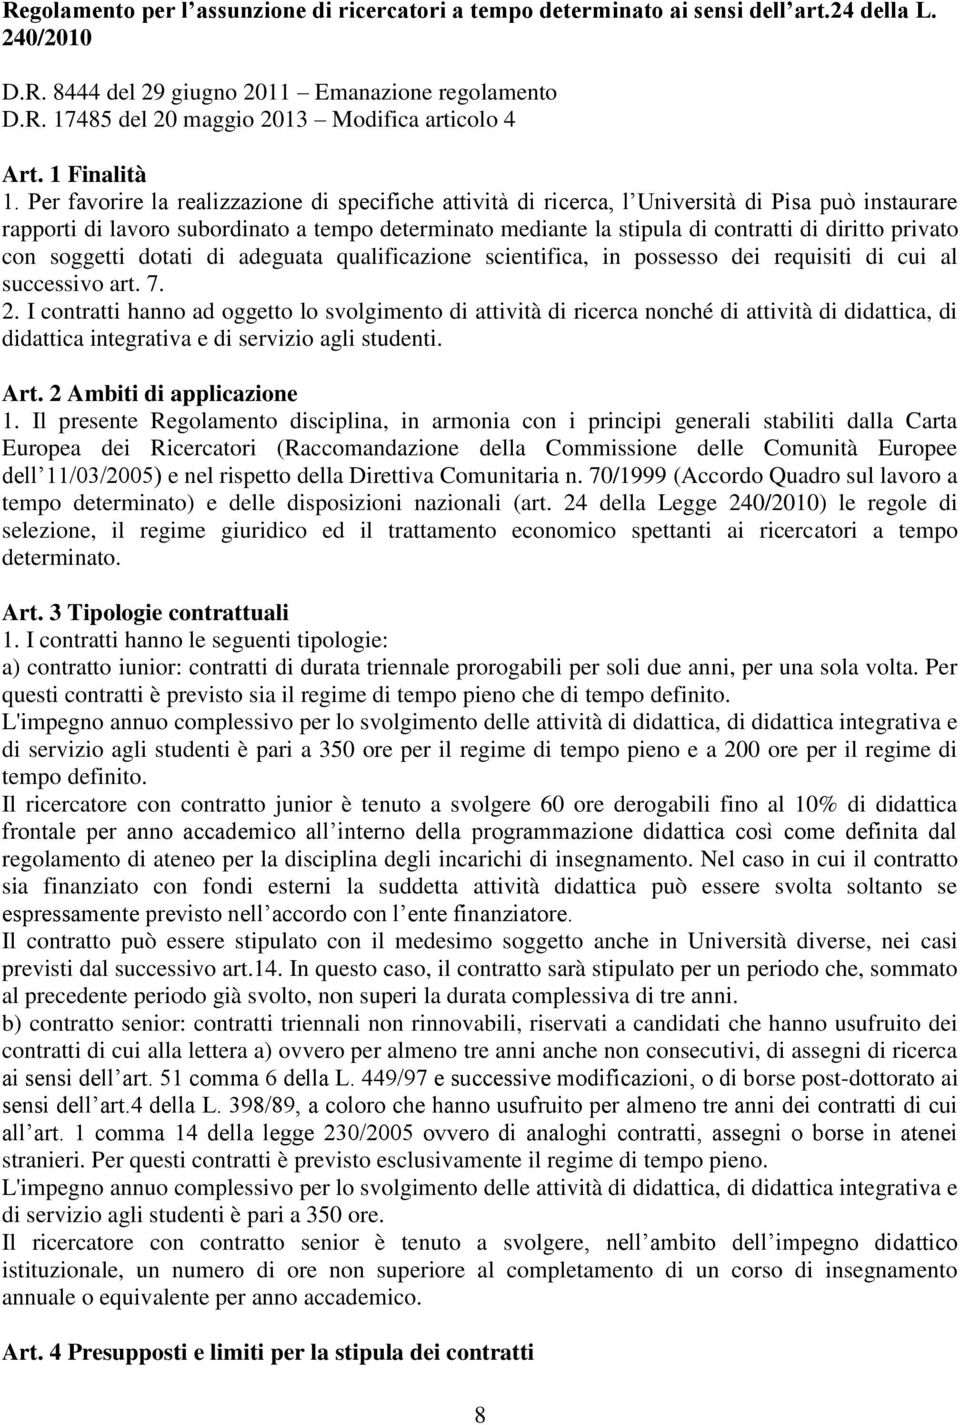 Per favorire la realizzazione di specifiche attività di ricerca, l Università di Pisa può instaurare rapporti di lavoro subordinato a tempo determinato mediante la stipula di contratti di diritto